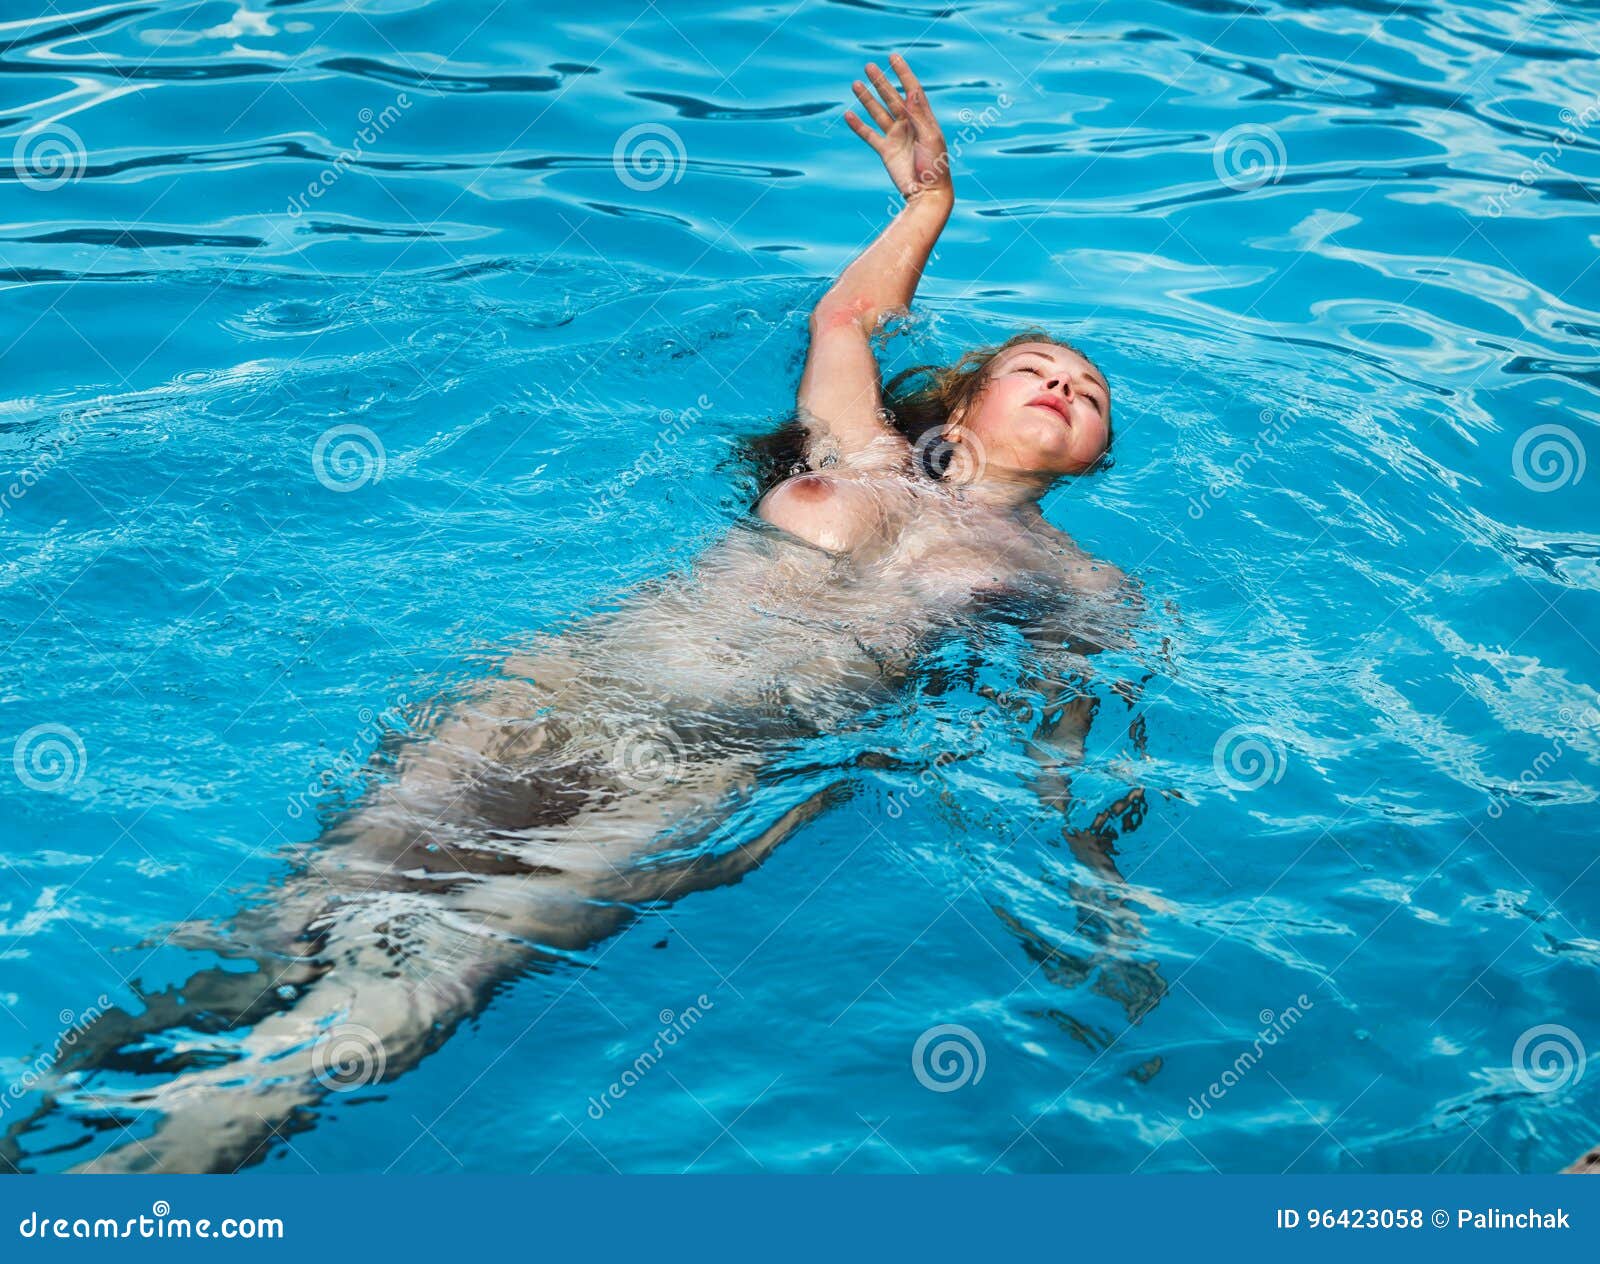 nude women swimming pool